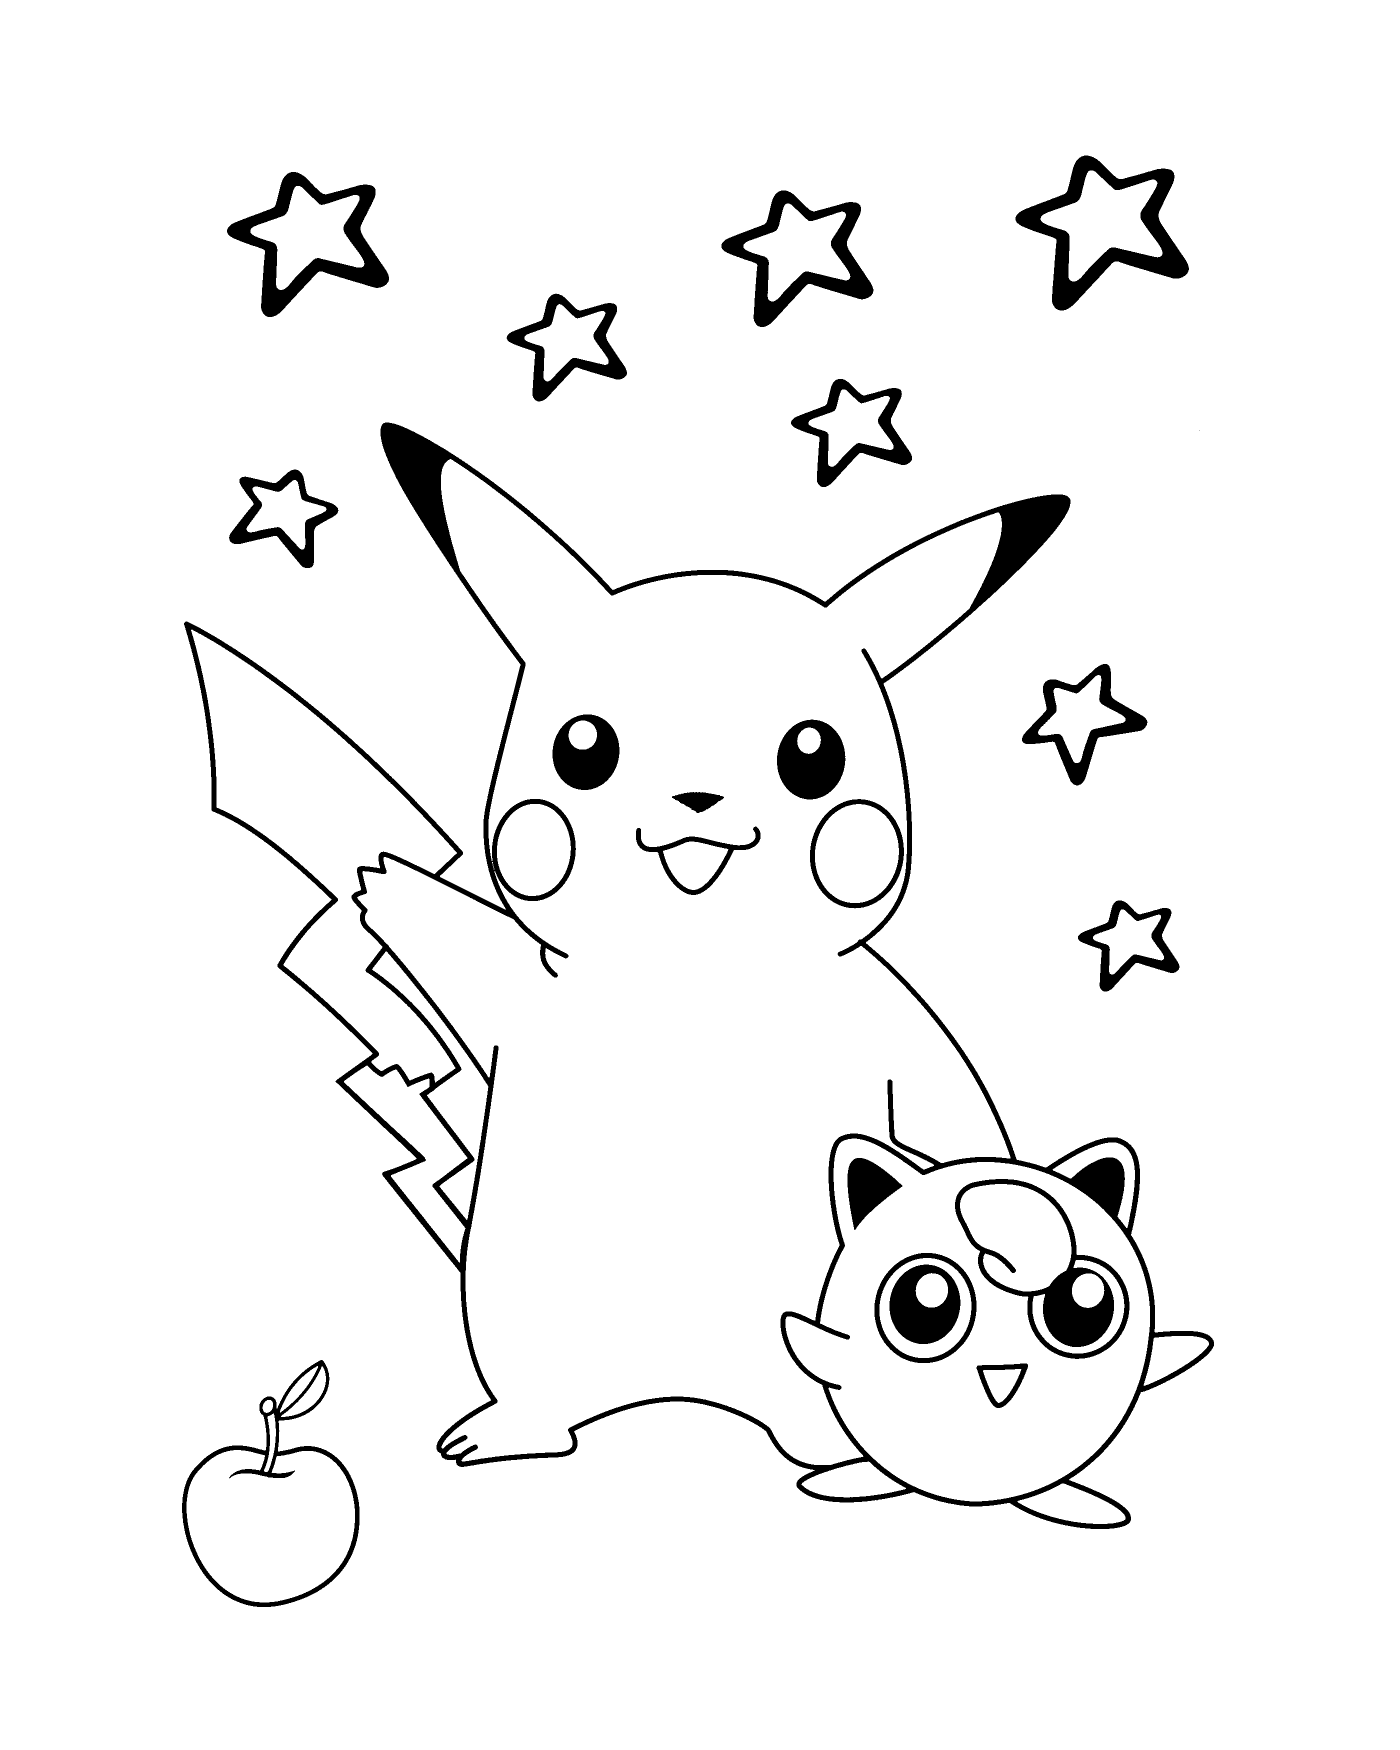  Pikachu, adorable y estrellado 